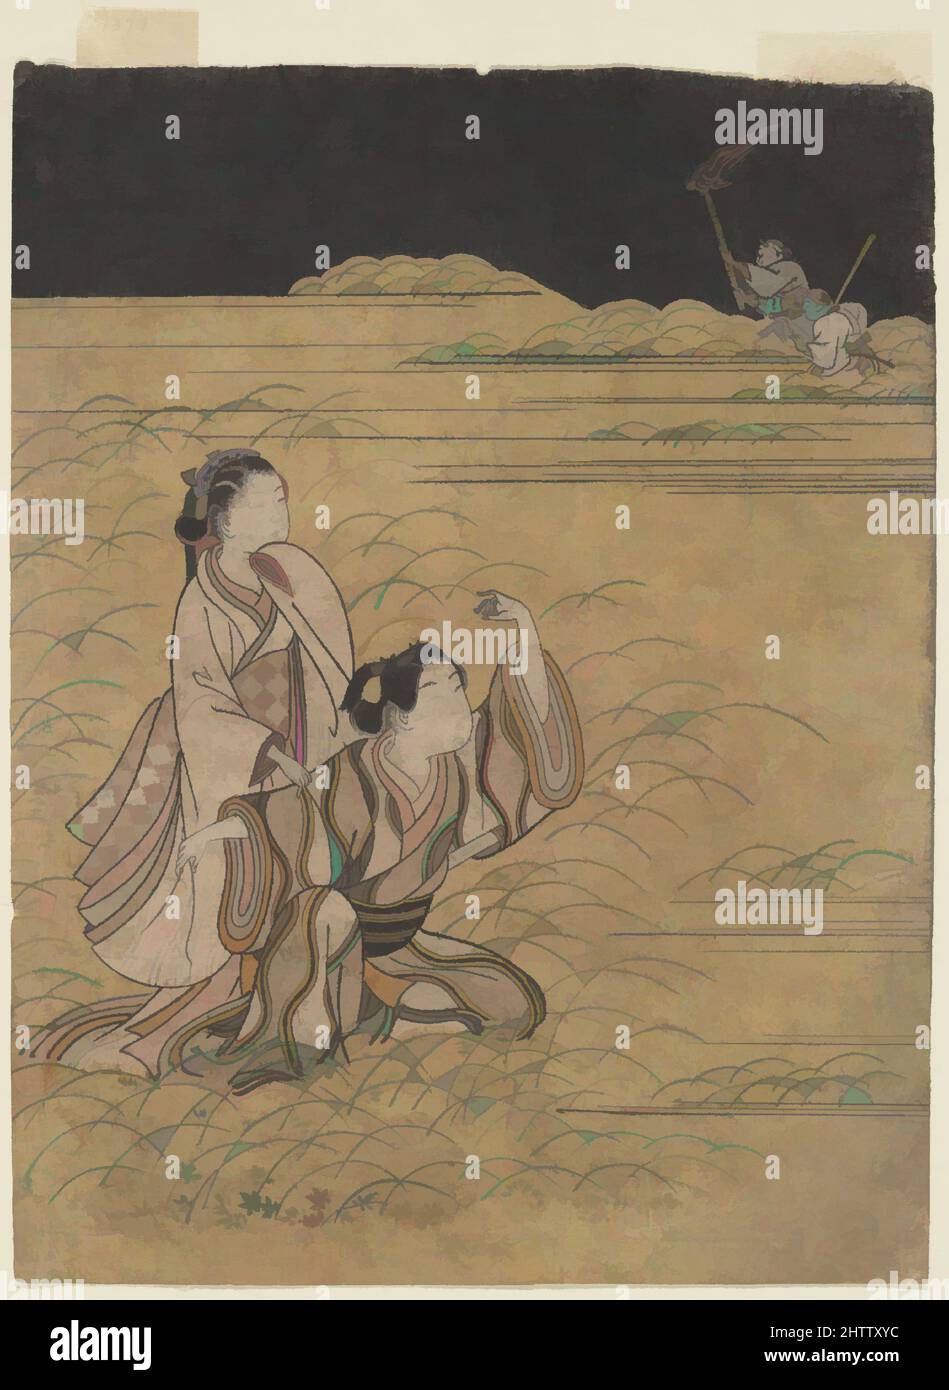 Art inspiré par les Elopers à Musashino, époque Edo (1615–1868), Japon, imprimé en polychrome sur bois; encre et couleur sur papier, image: 10 x 7 5/8 po. (25,4 x 19,4 cm), tirages, Suikōdō sakei (japonais, active ca. 1764), dans cet épisode des Tales d'ISE, le jeune héros infatigable de la, les œuvres classiques modernisées par Artotop avec un peu de modernité. Formes, couleur et valeur, impact visuel accrocheur sur l'art émotions par la liberté d'œuvres d'art d'une manière contemporaine. Un message intemporel qui cherche une nouvelle direction créative. Artistes qui se tournent vers le support numérique et créent le NFT Artotop Banque D'Images